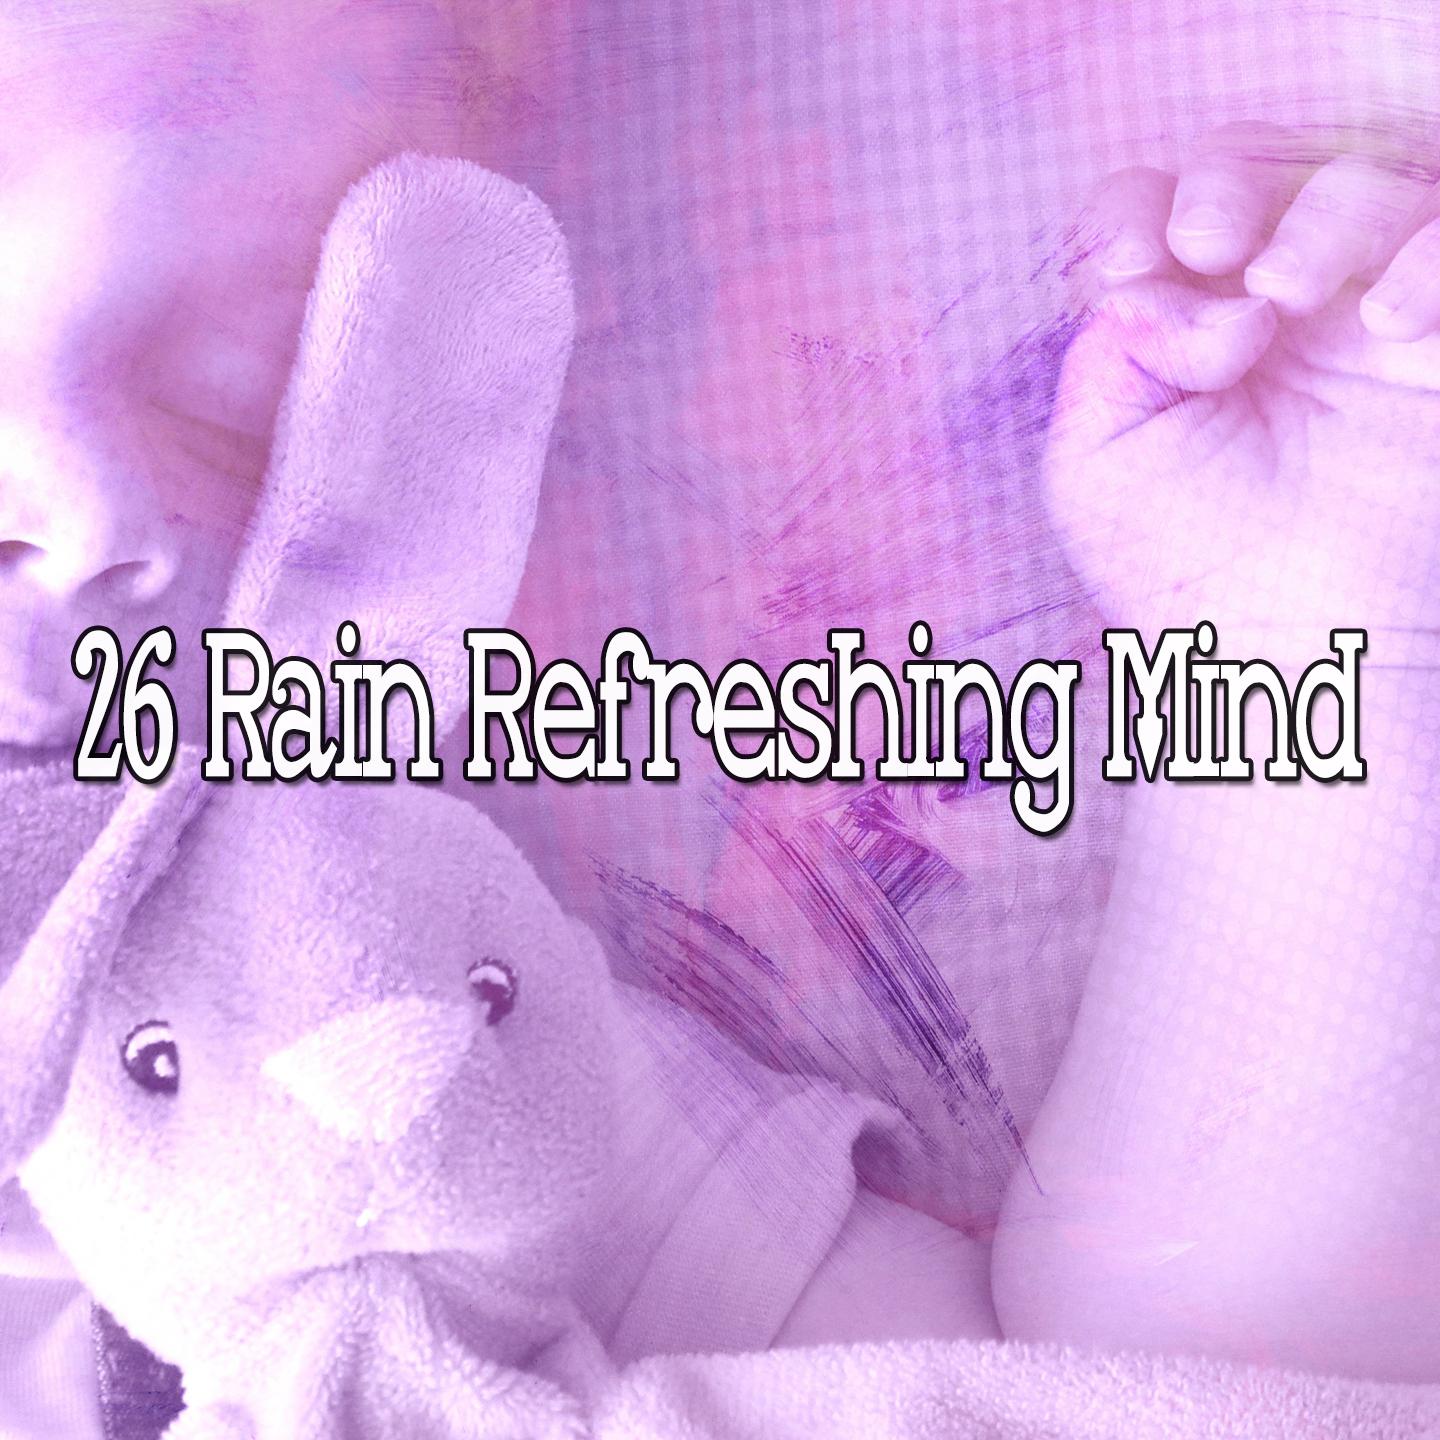 26 Rain Refreshing Mind